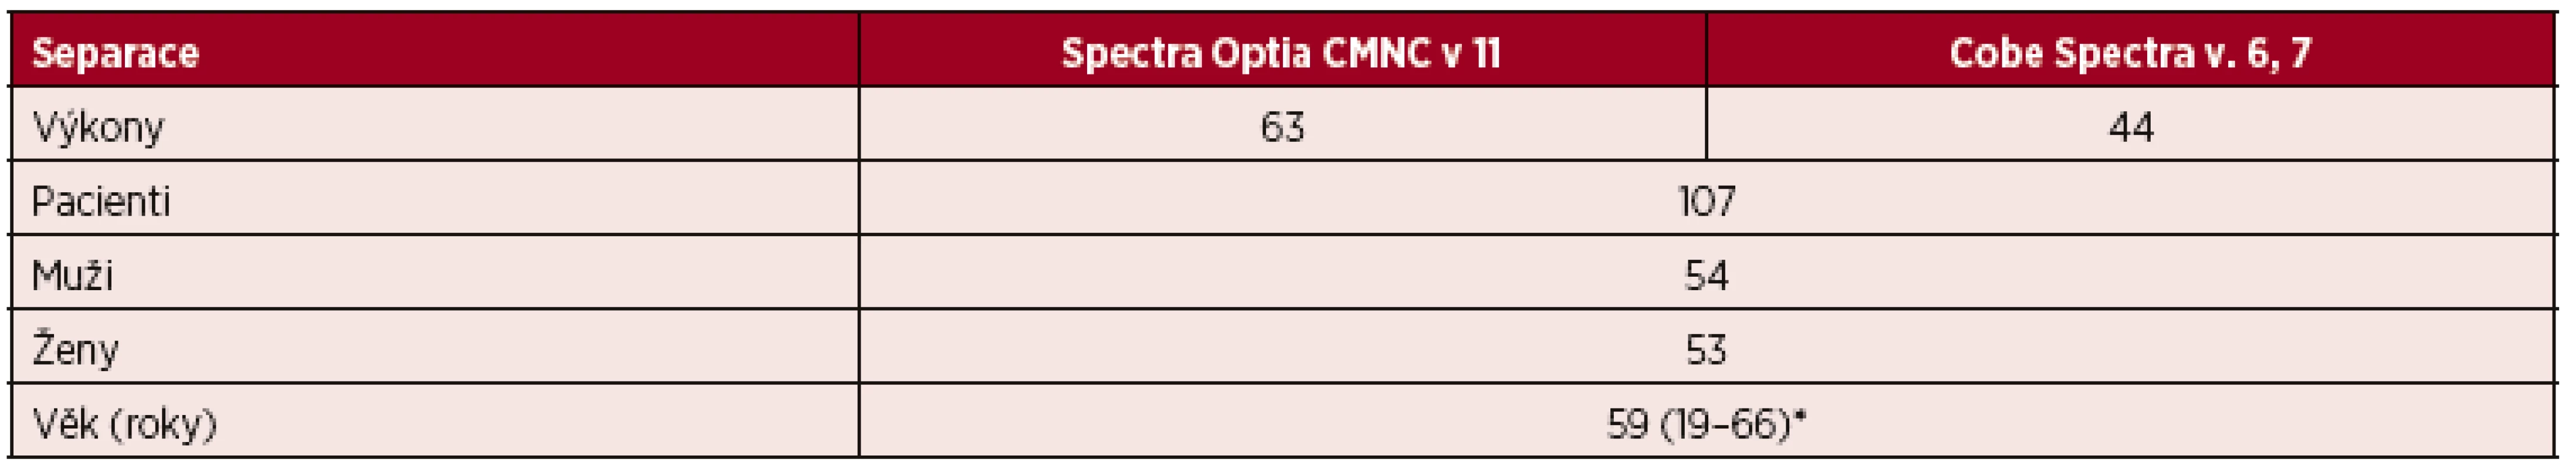 Velkoobjemové (LVL) separace PBPC autologní – CMNC Spectra Optia a Cobe Spectra